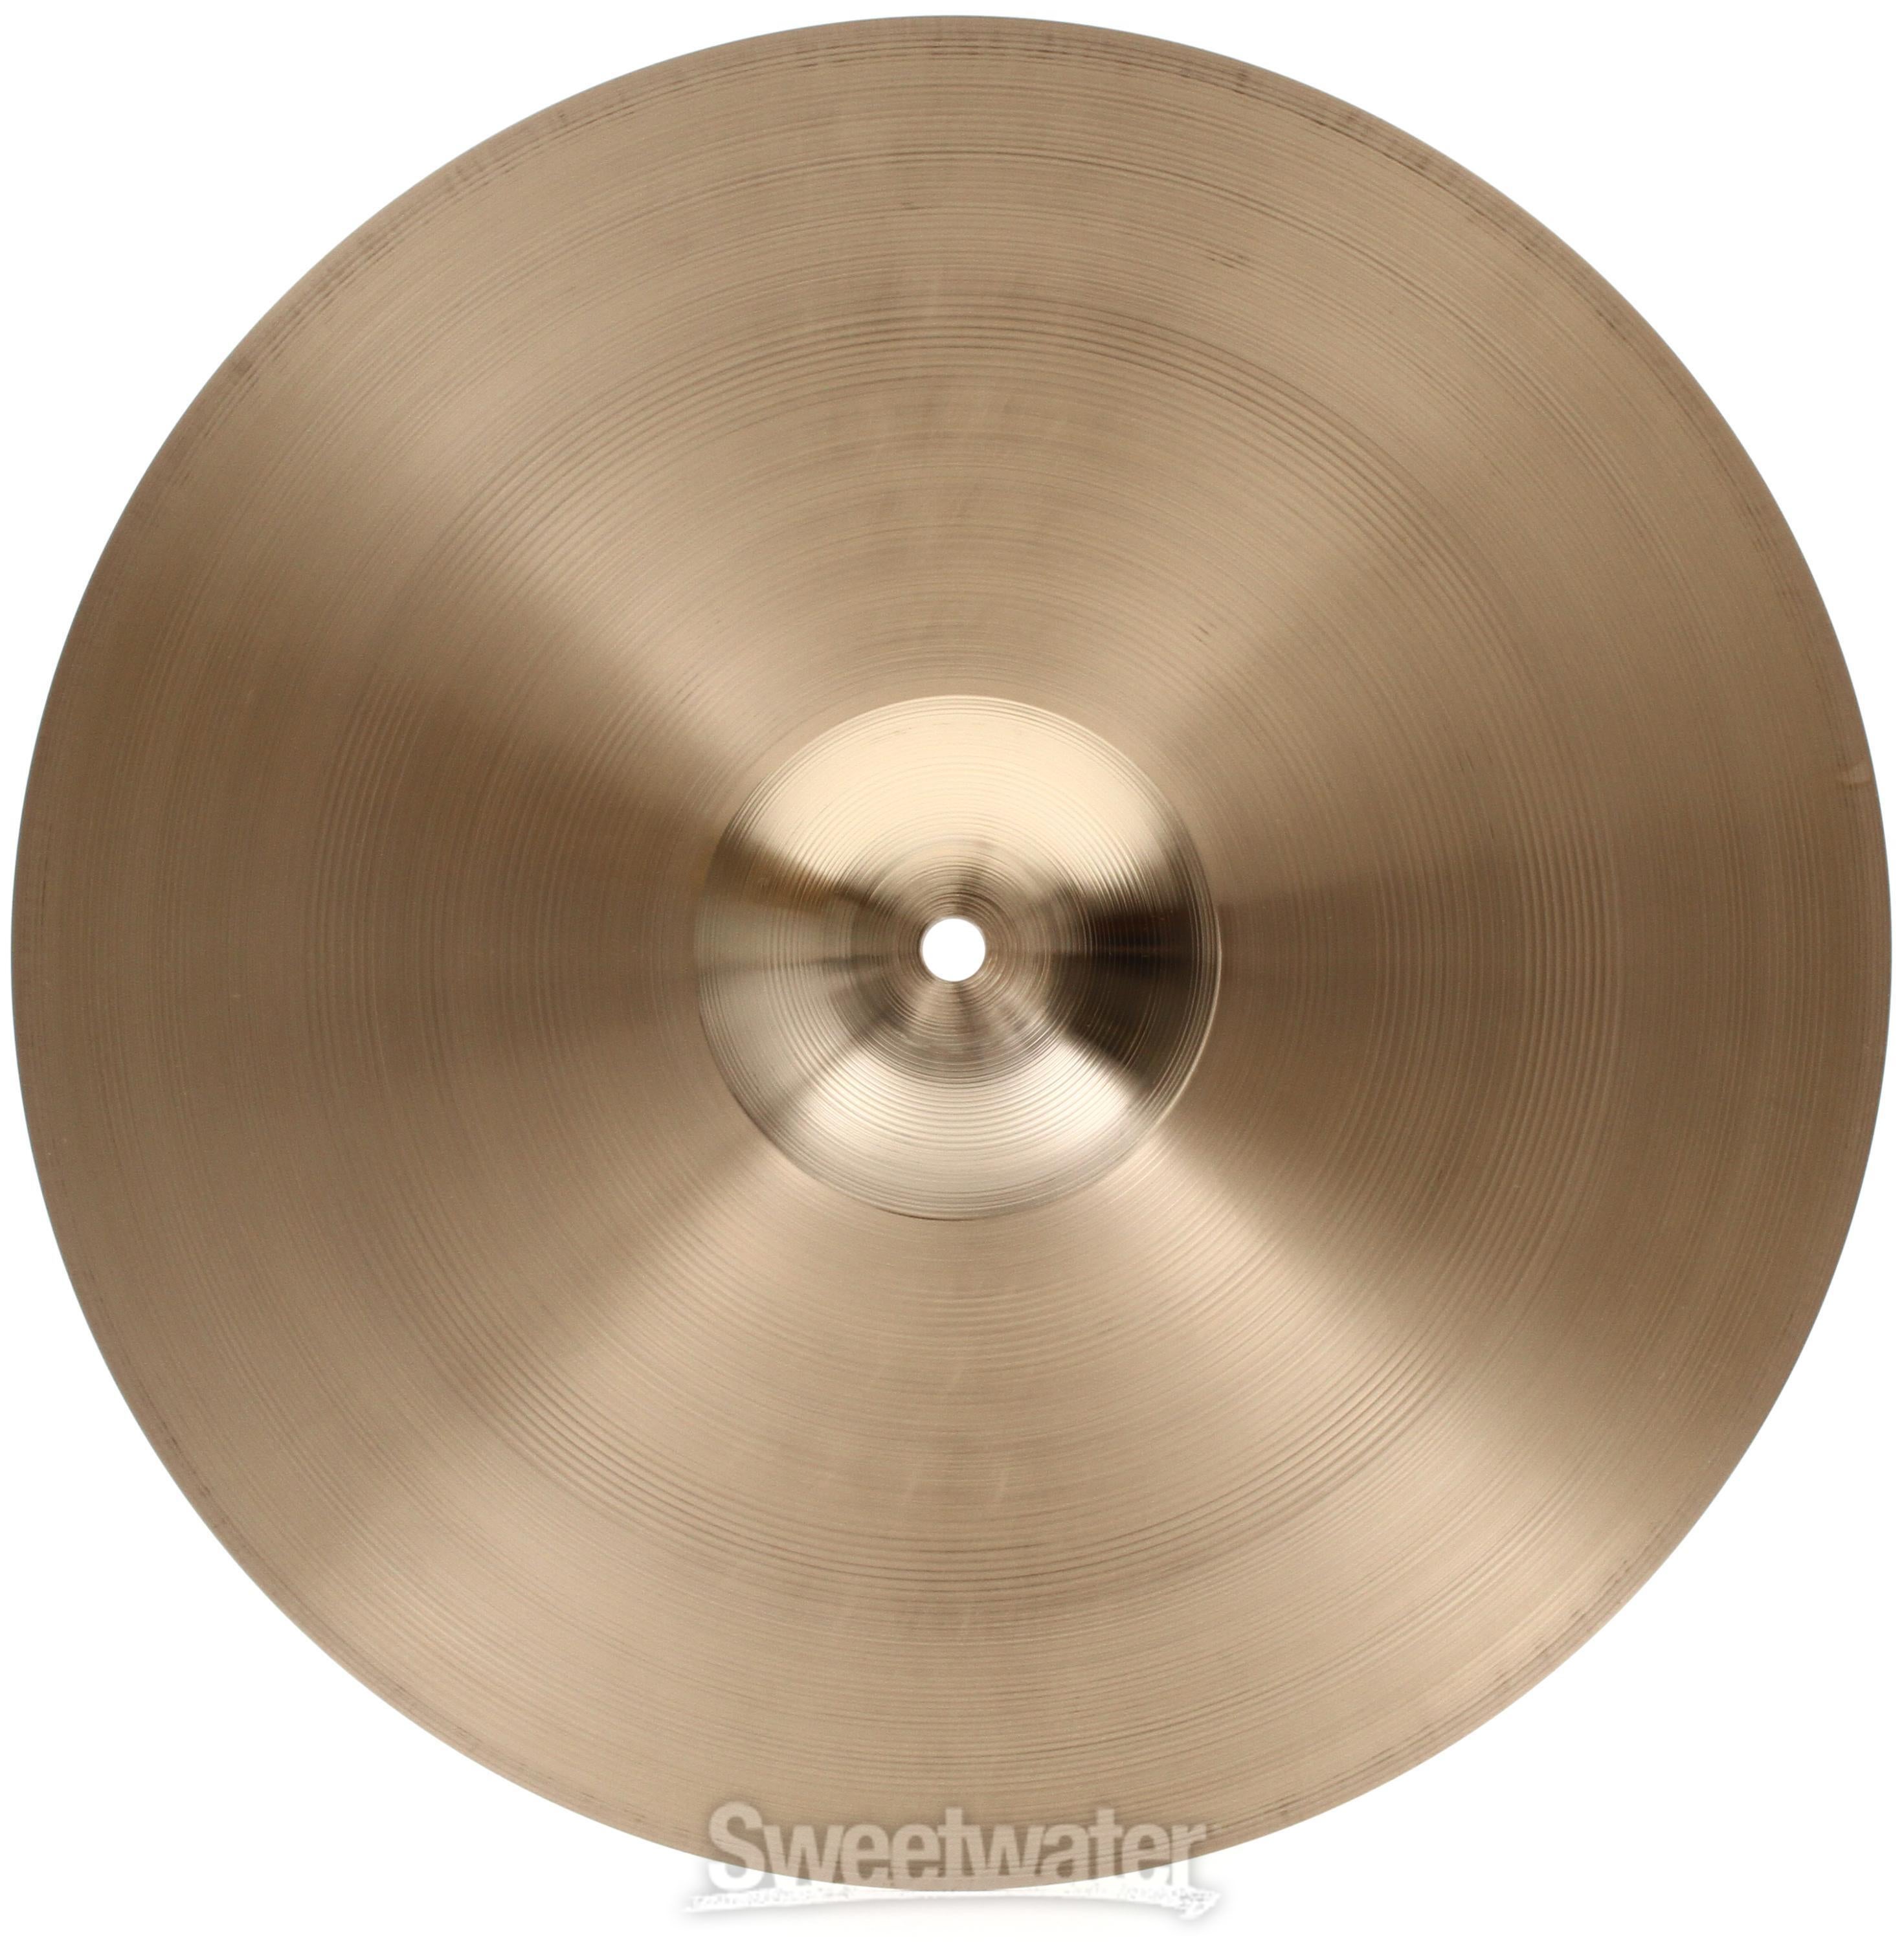 Sabian 14 inch AAX X-Celerator Hi-hat Cymbals